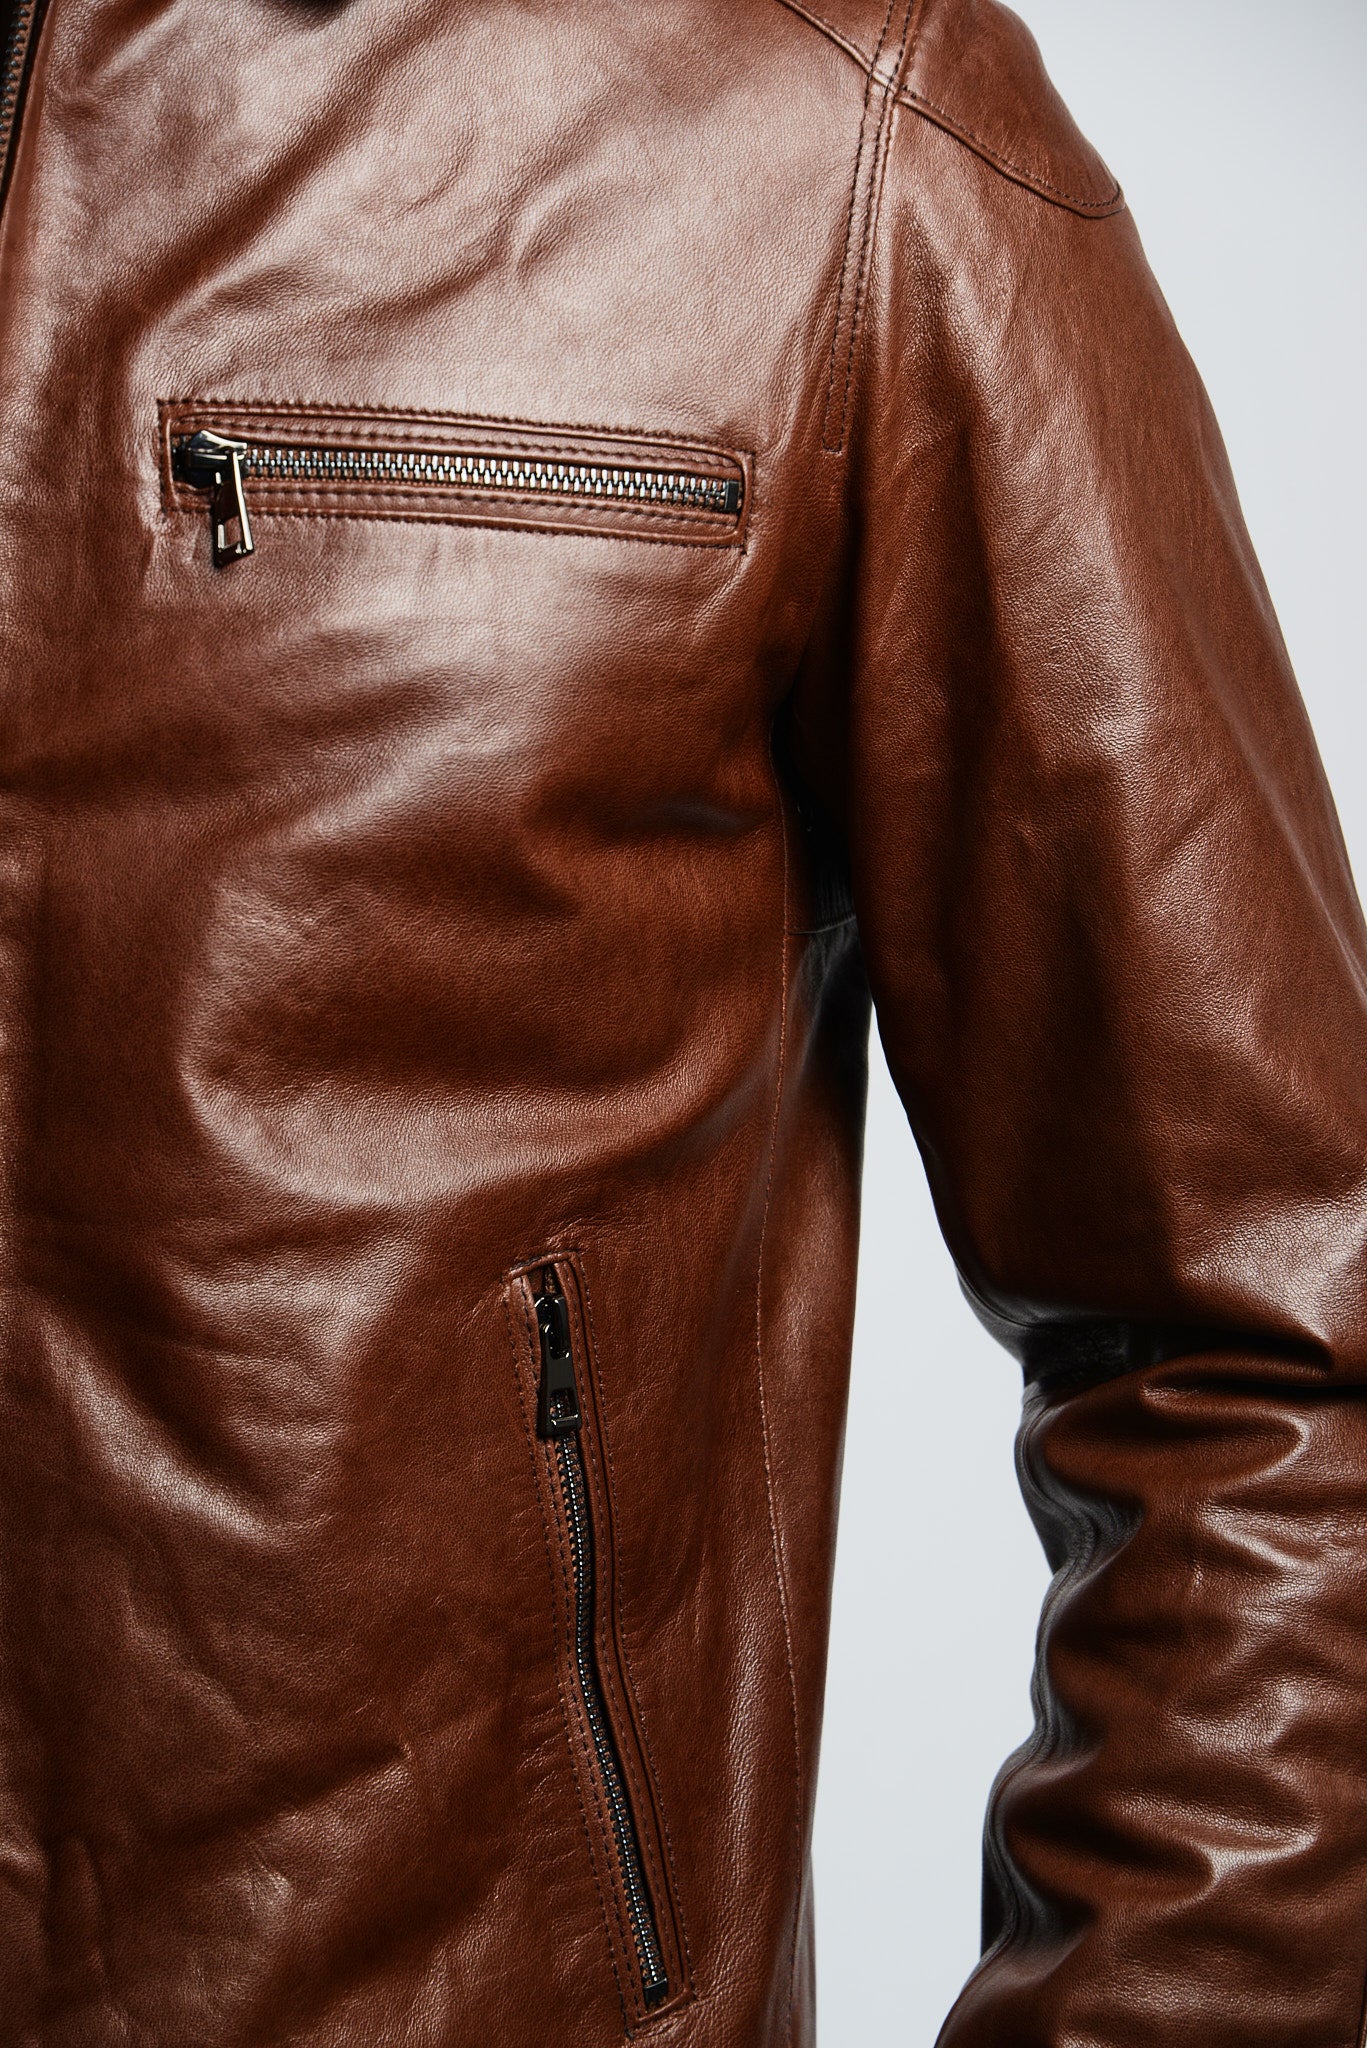 Holloway Bomber Leather Jacket